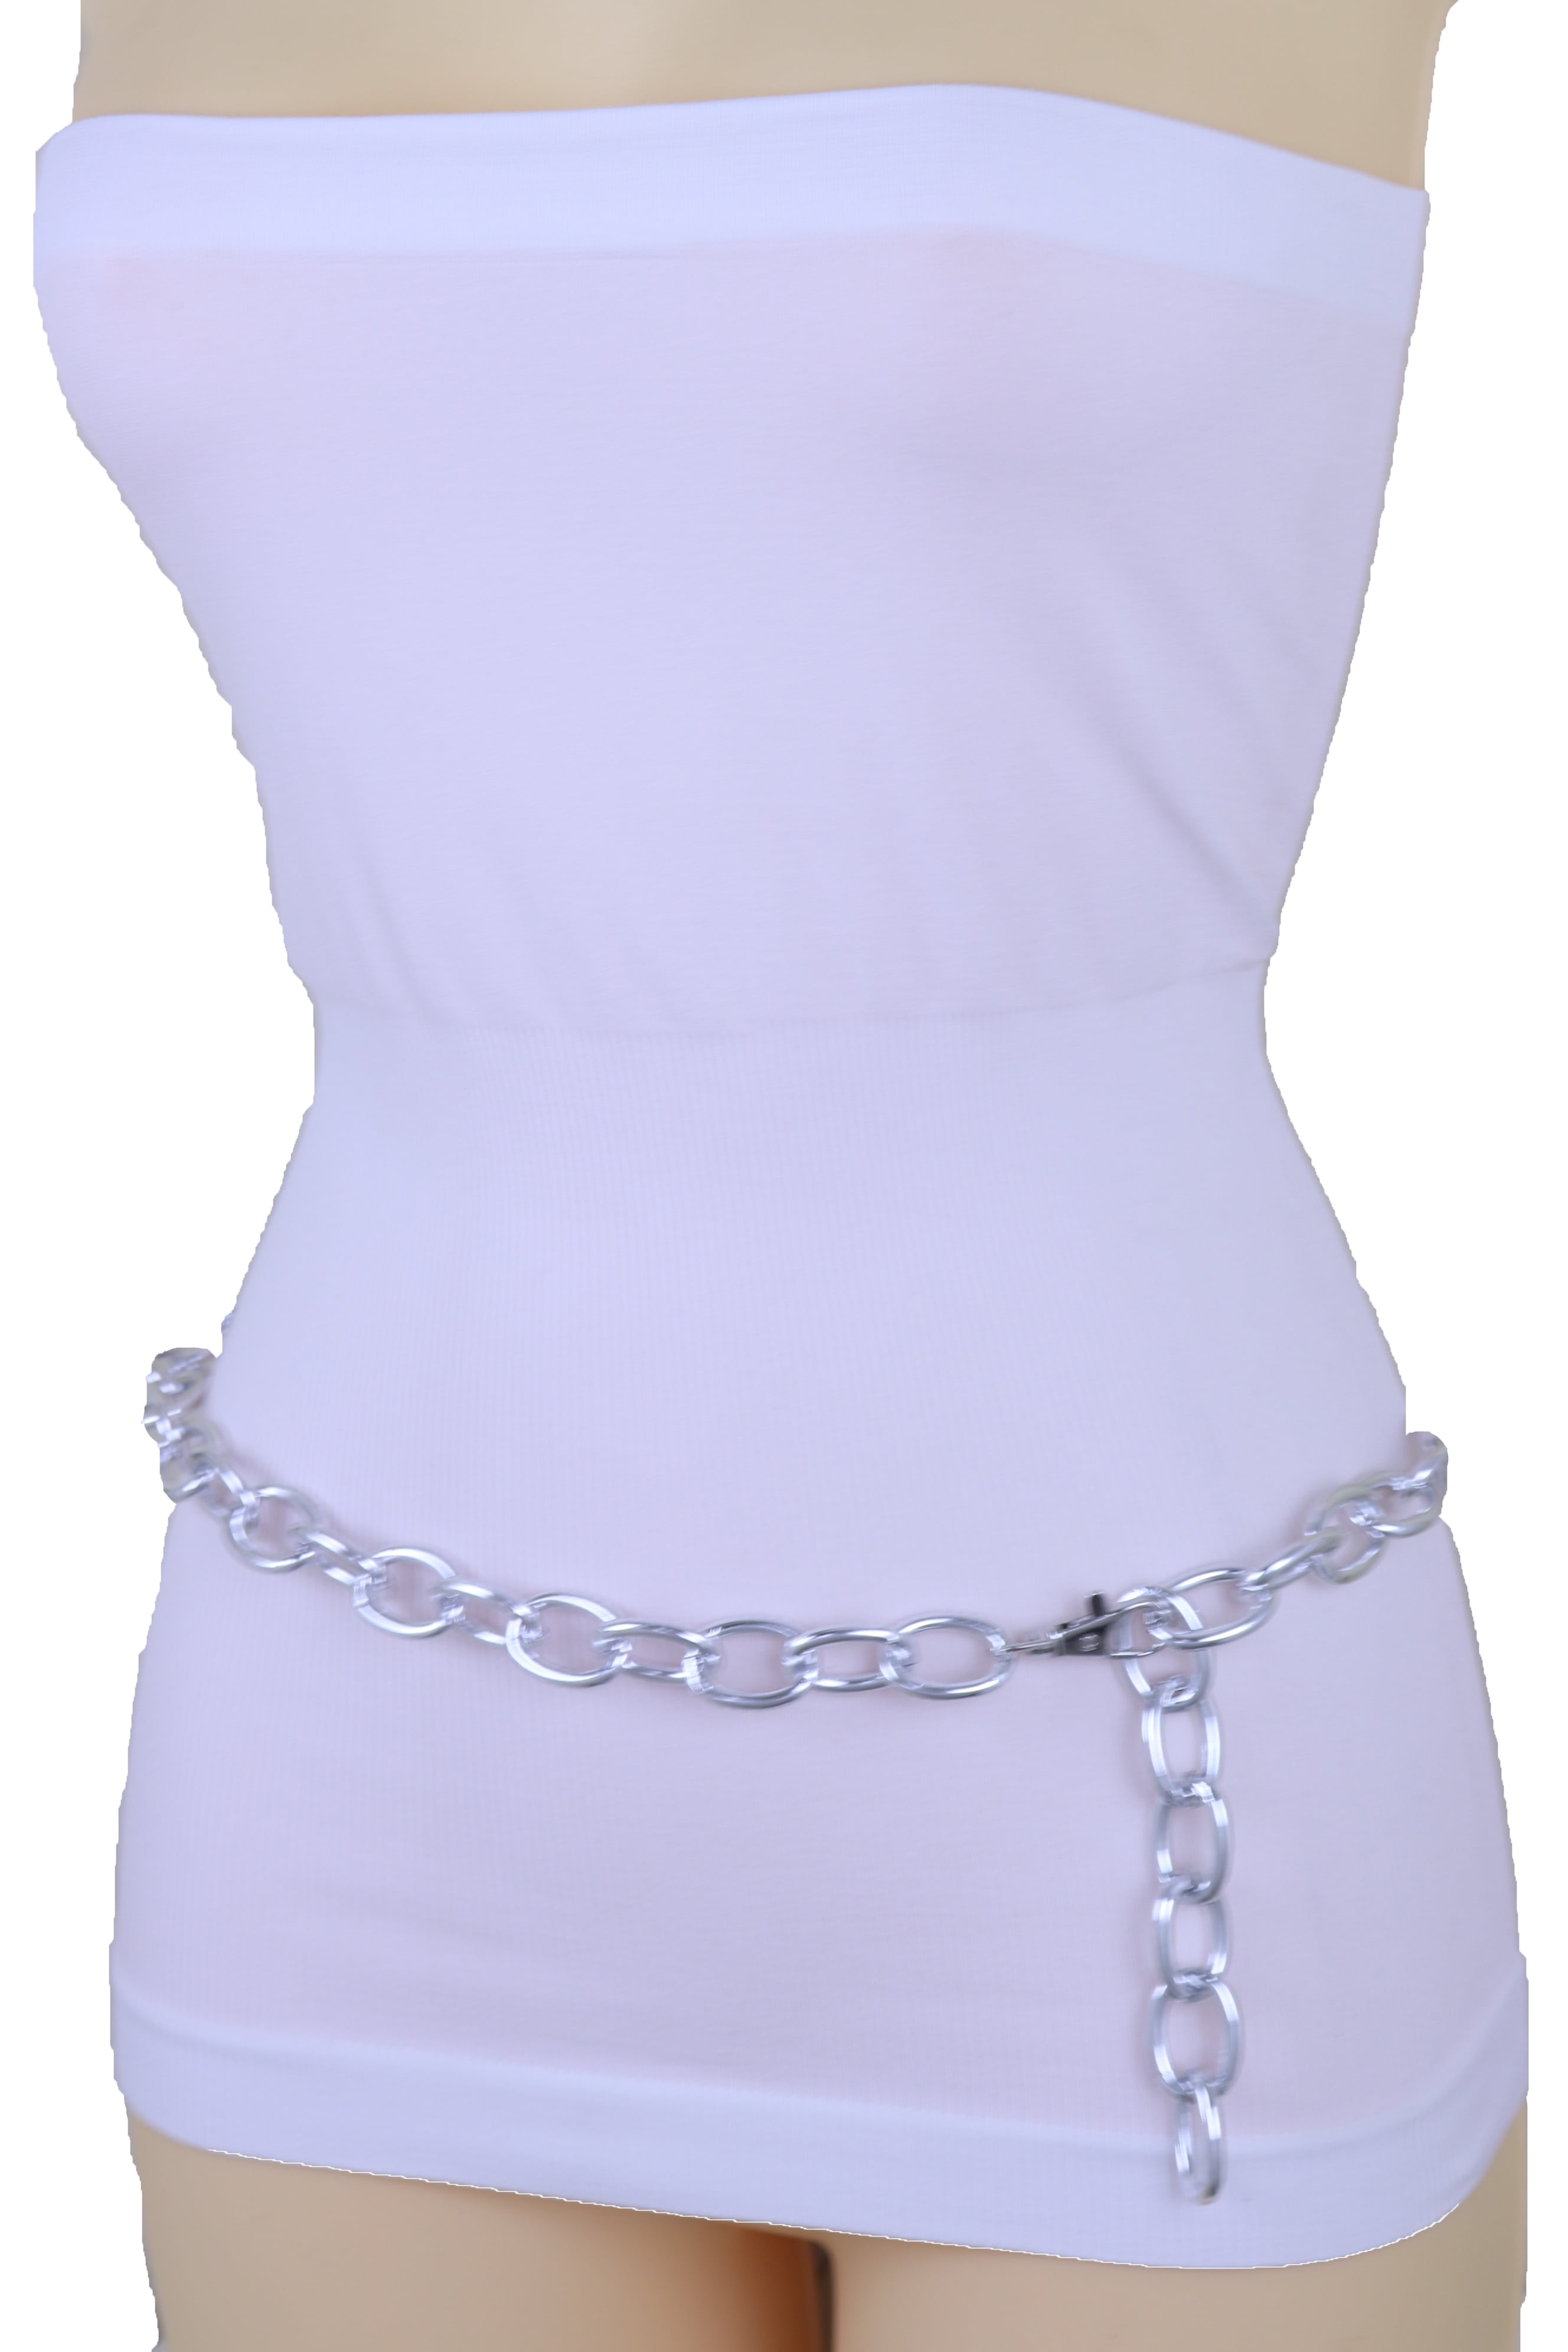 Women Modern Belt Hip Waist Silver Metal Chain Snowflake Charm Plus Size XL XXL 